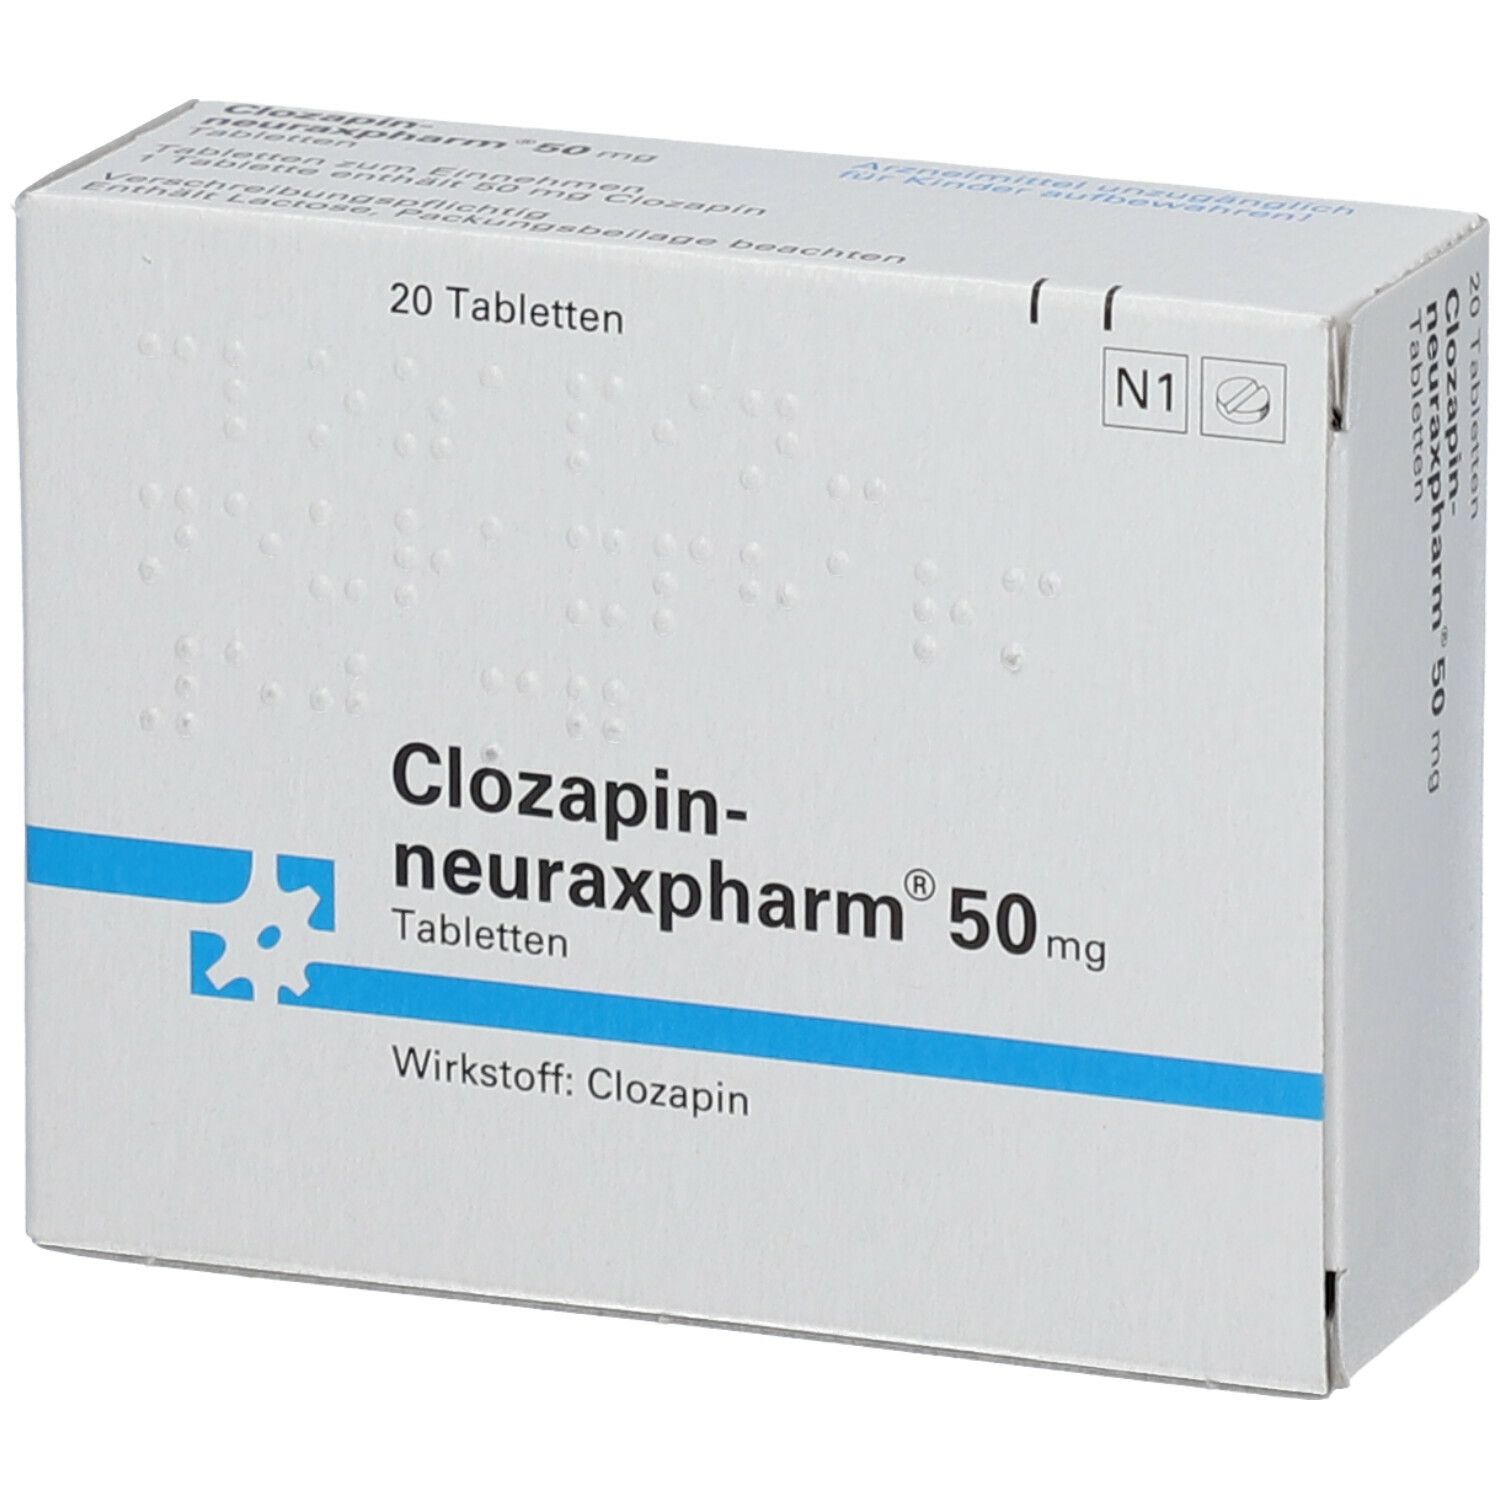 Clozapin-neuraxpharm® 50 mg